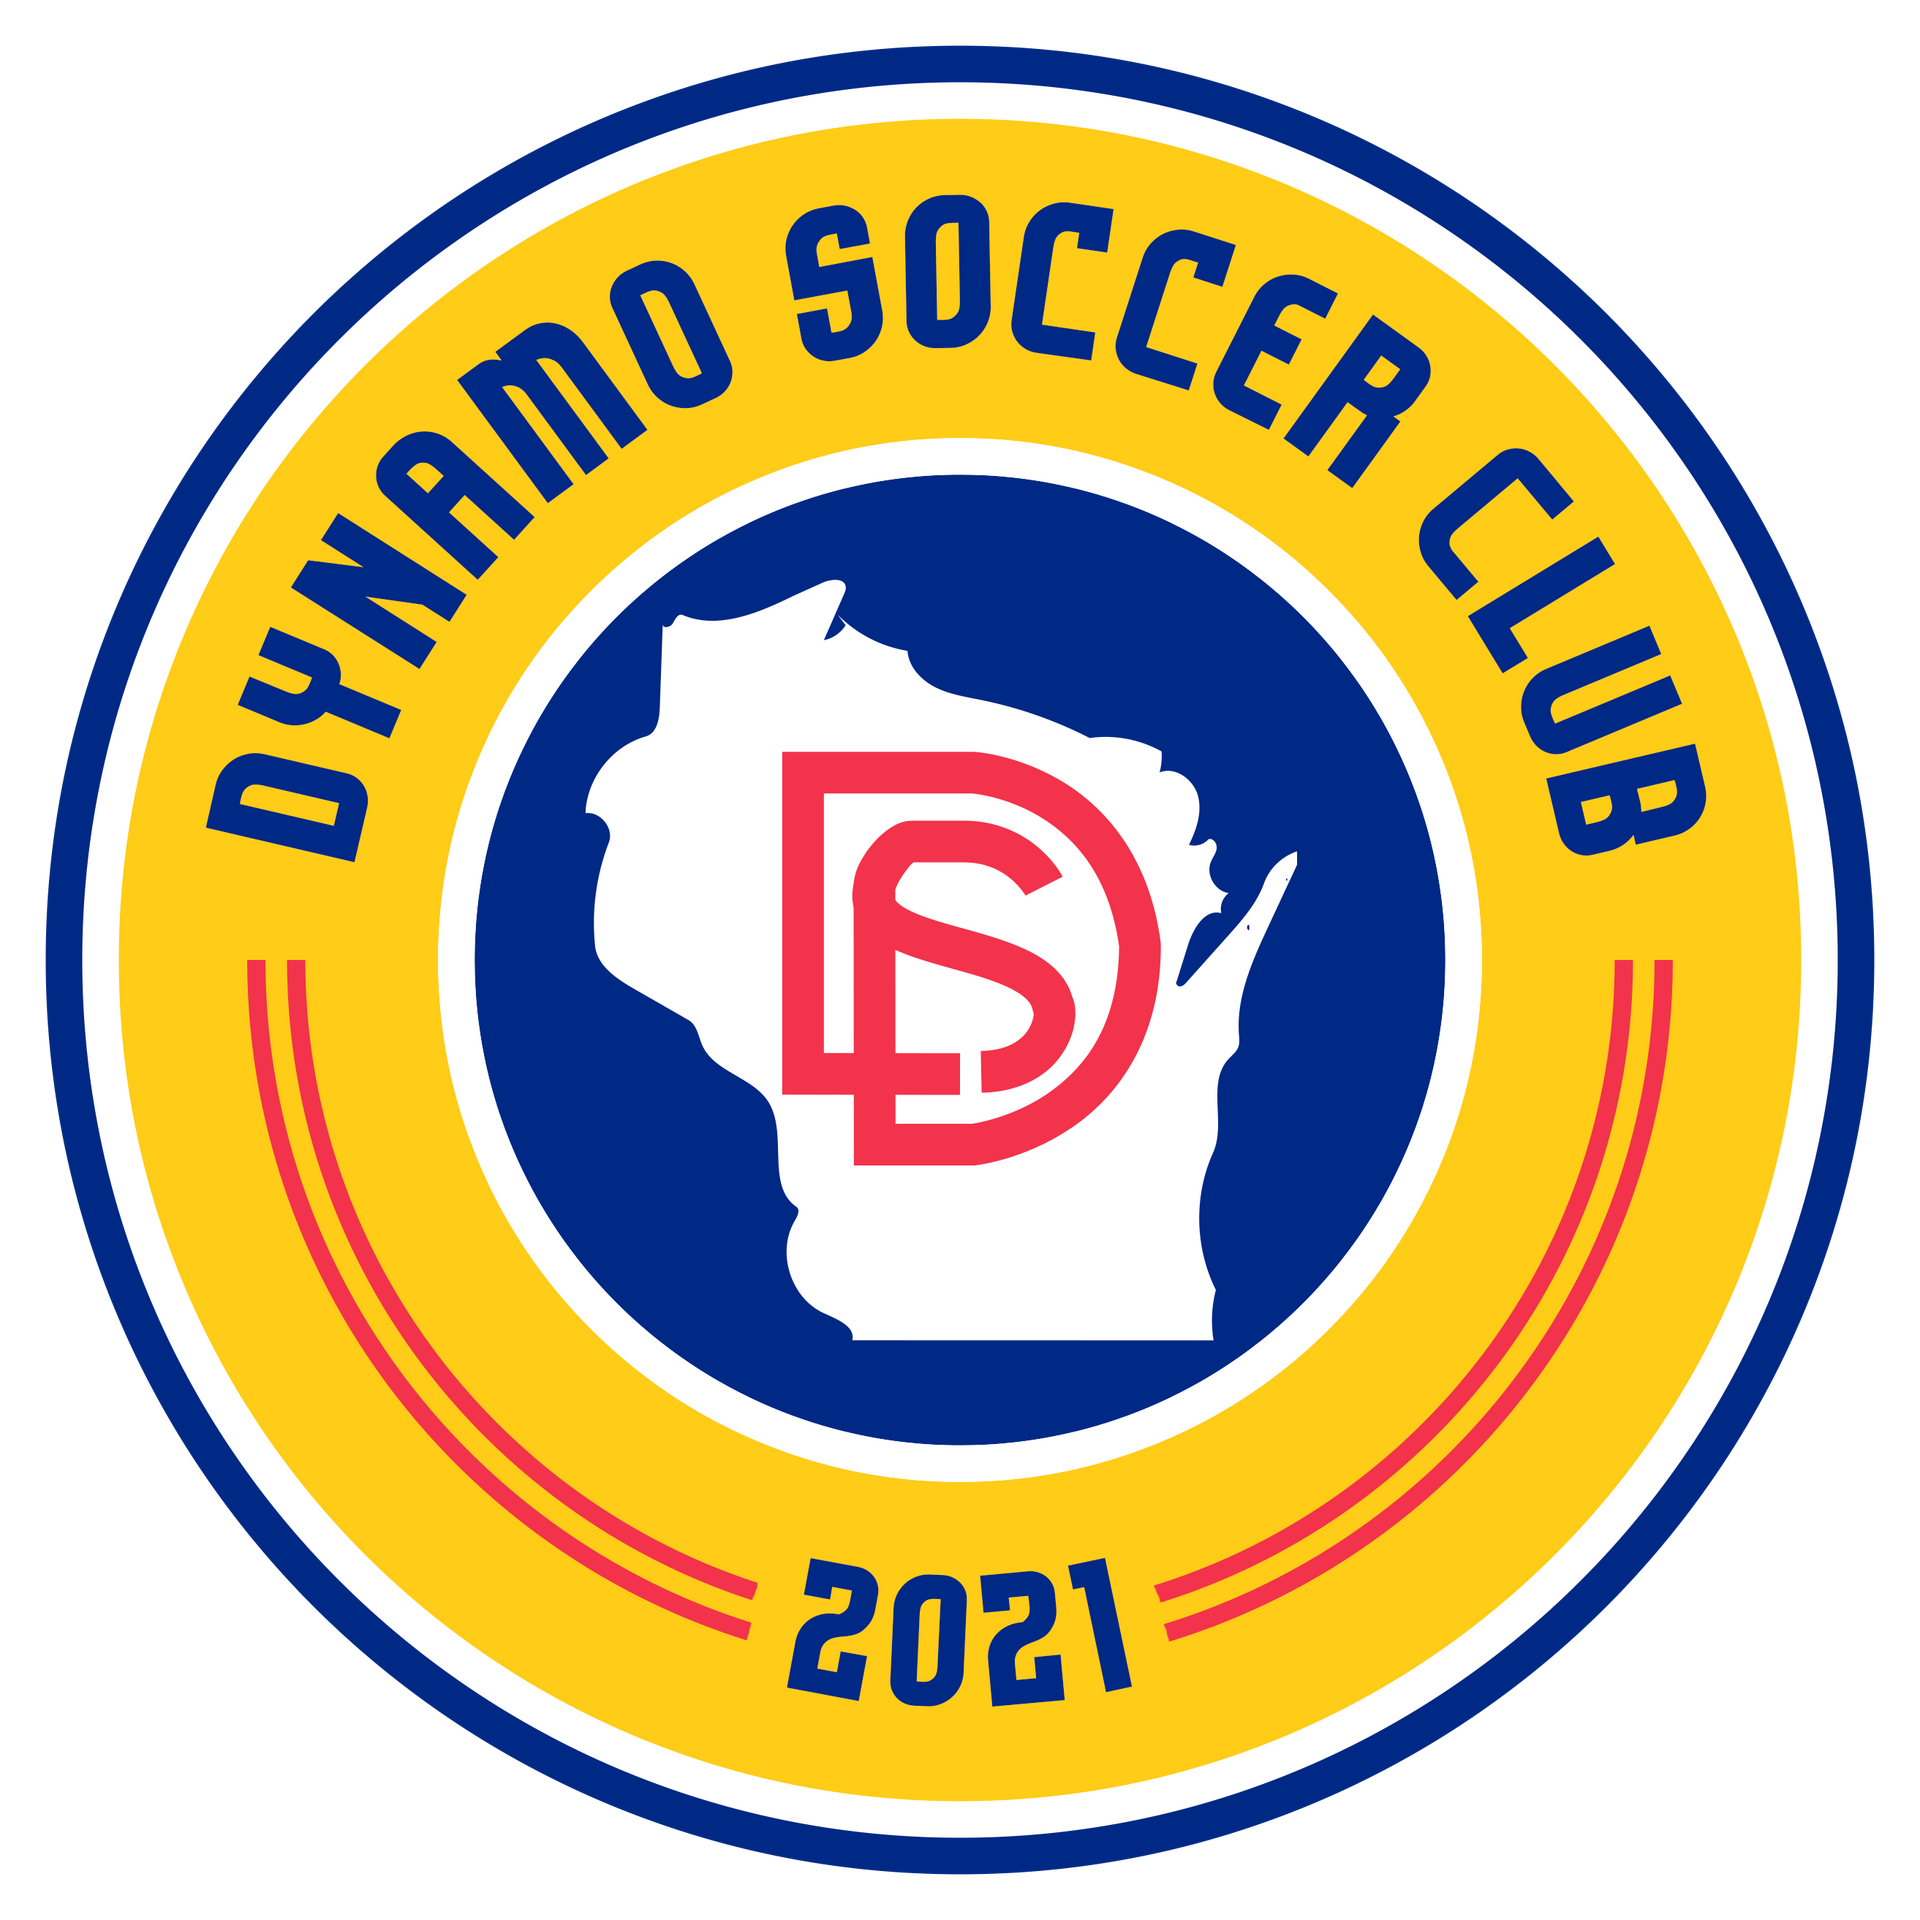 Dynamo Soccer Club